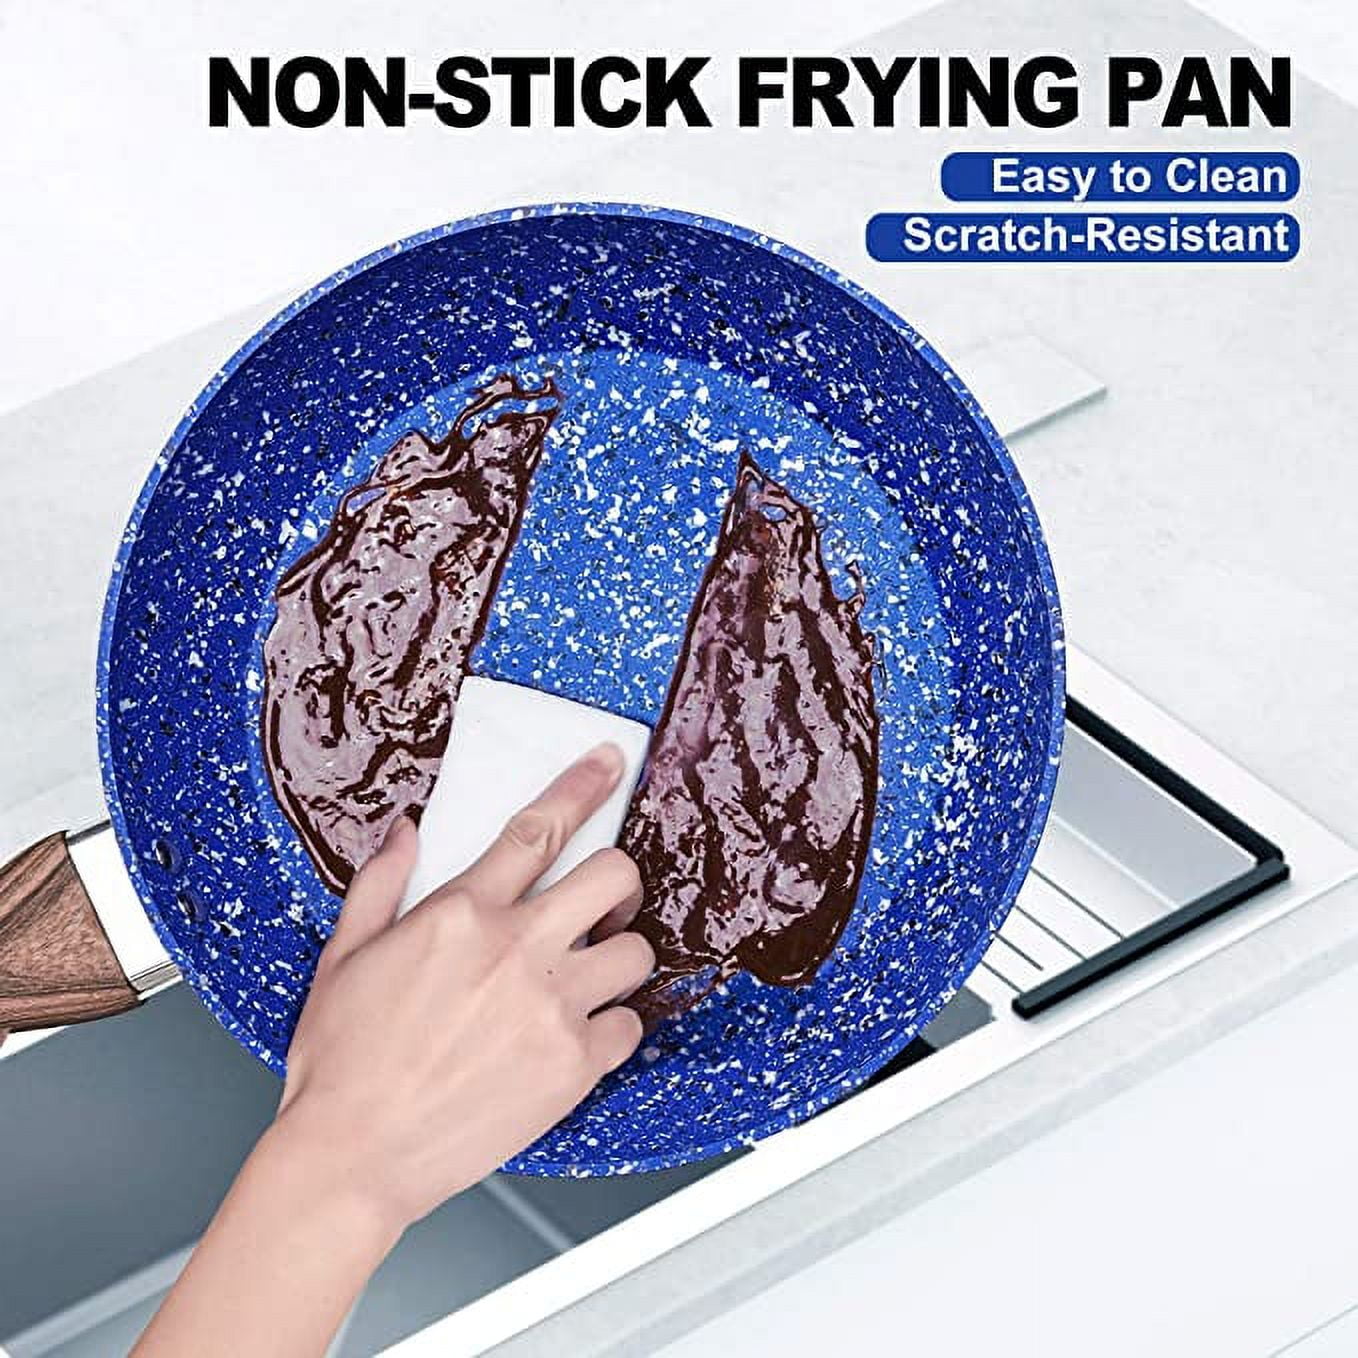 MICHELANGELO Frying Pan Nonstick 8+10, Multi-Purpose Nonstick